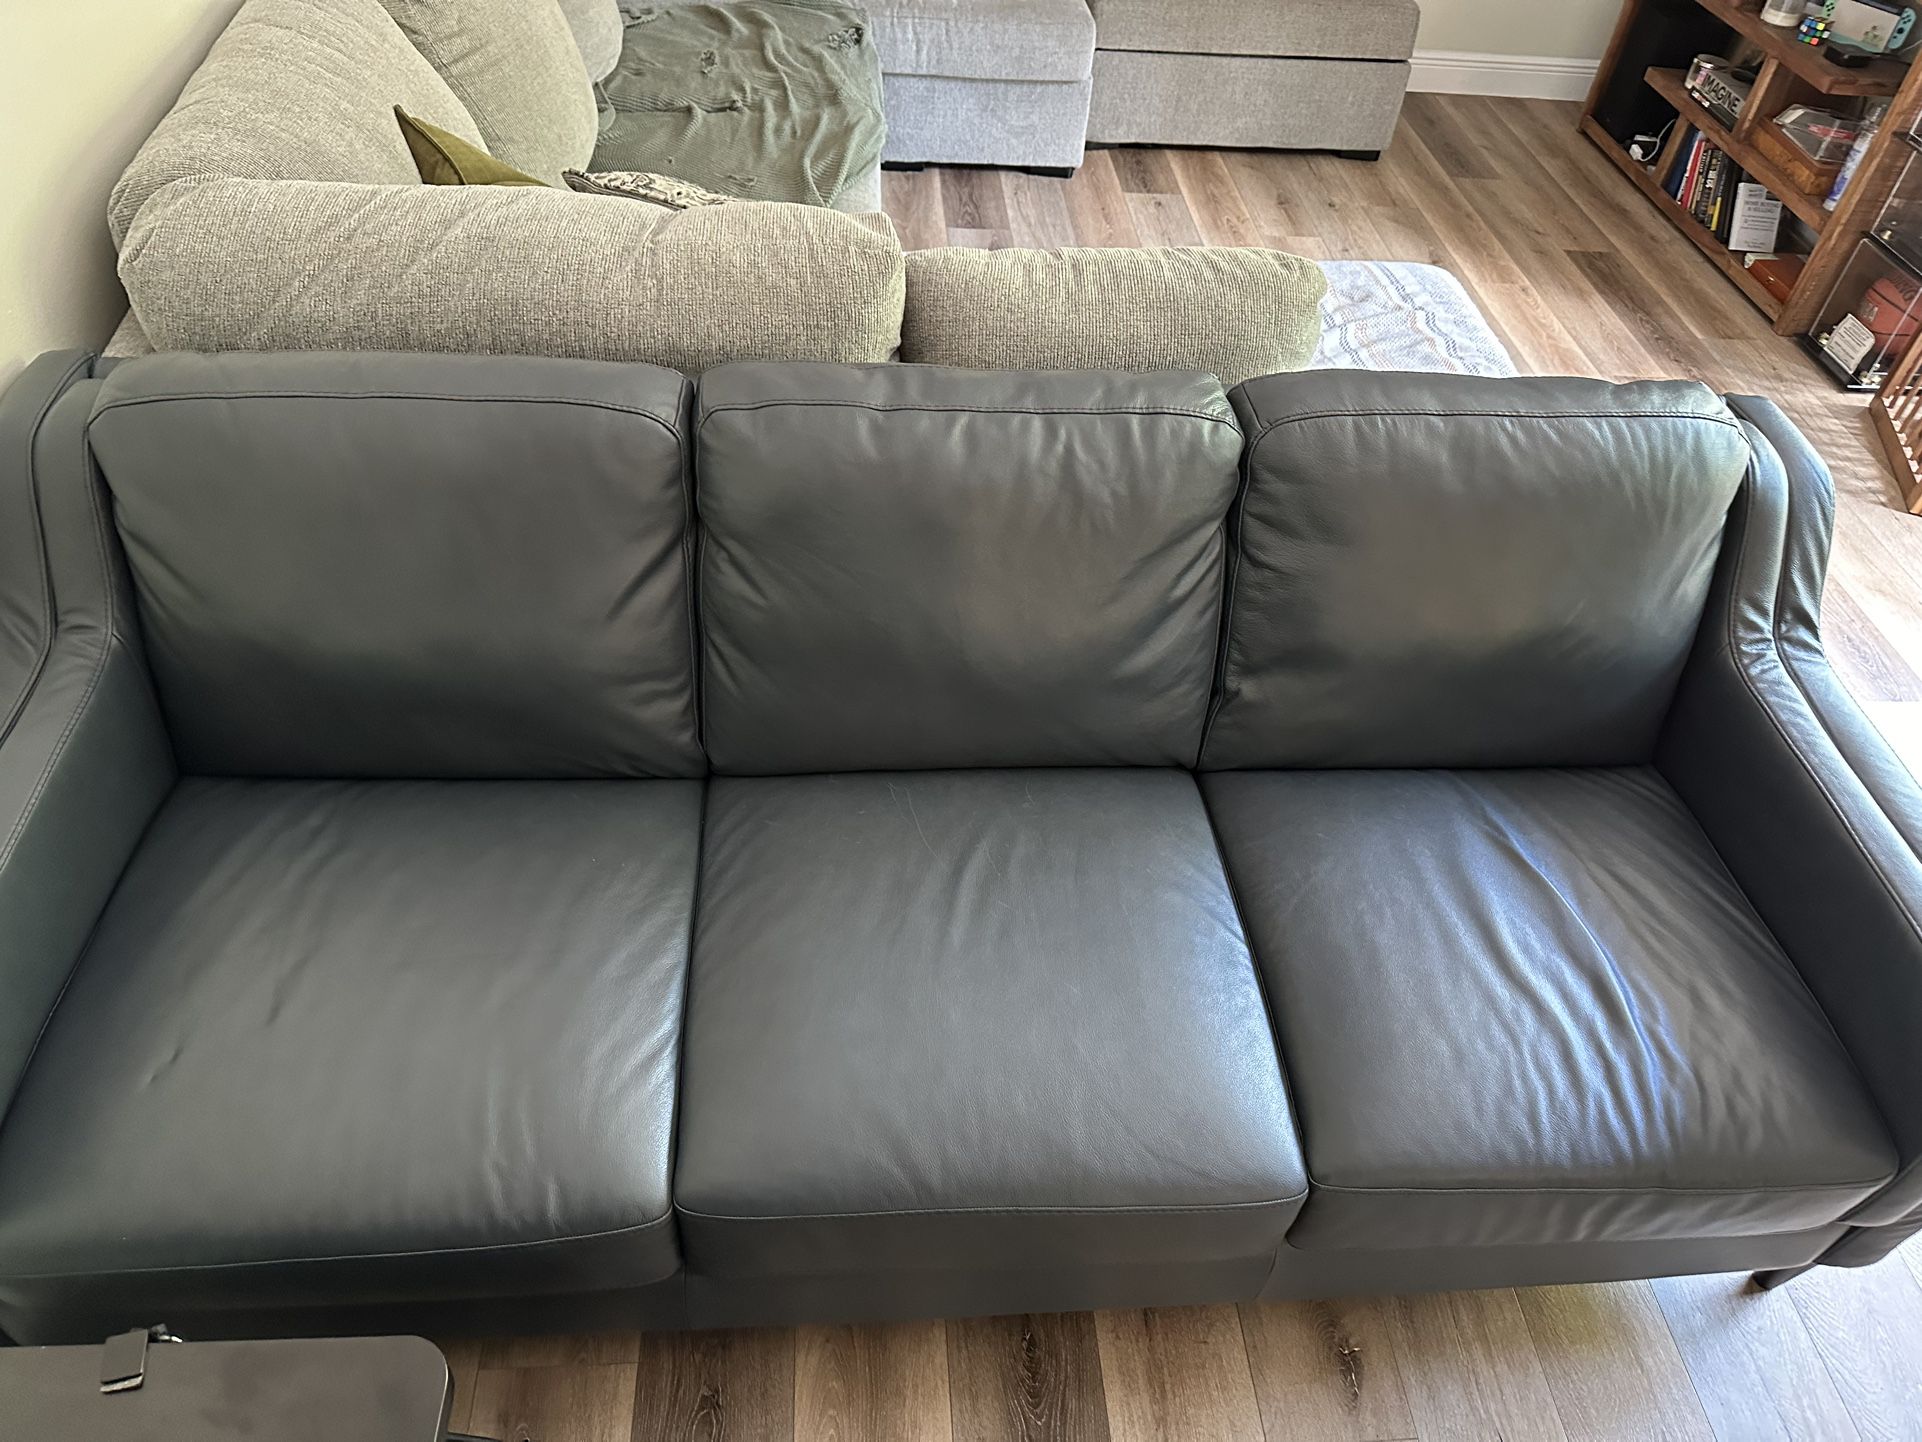 Blue leather Sofa